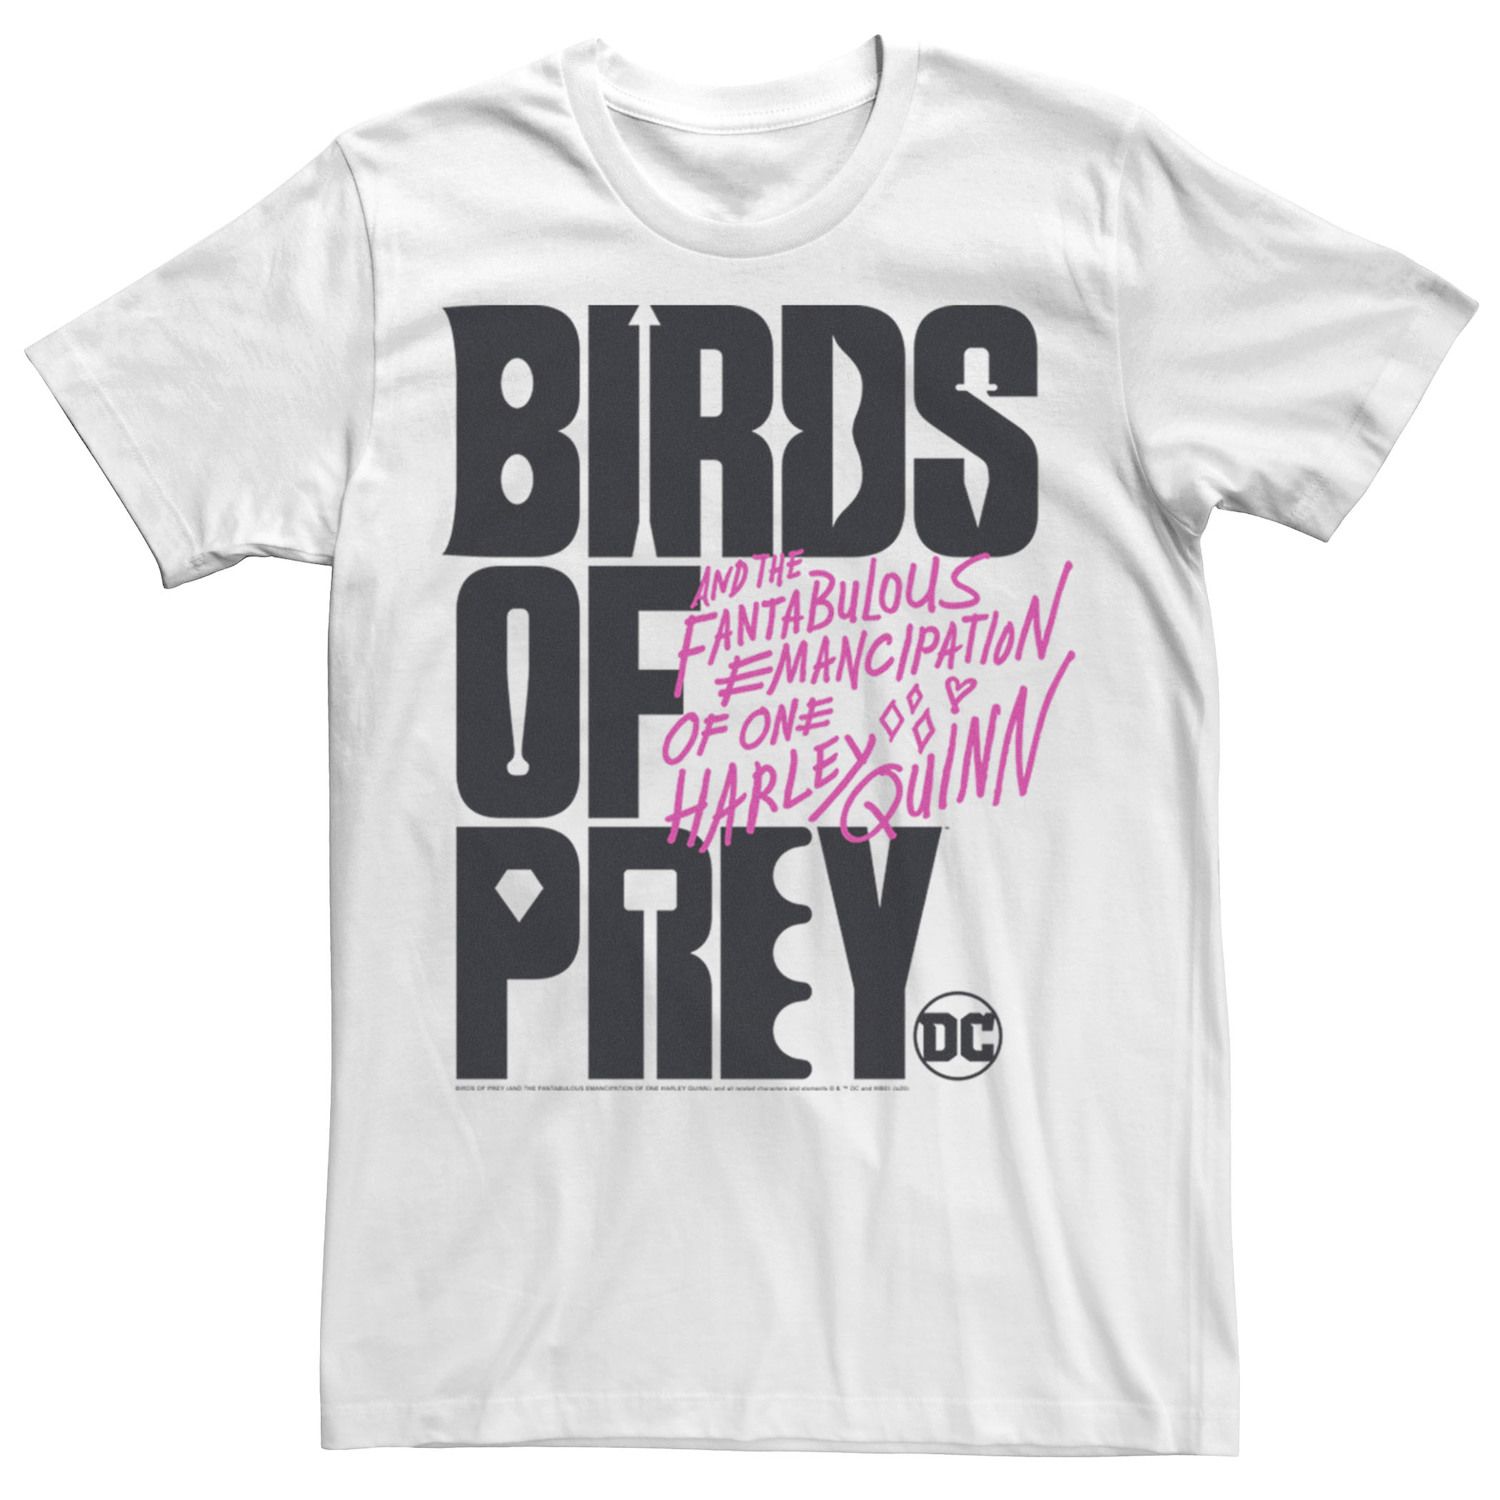 Мужская футболка с текстовым логотипом «Хищные птицы» DC Comics